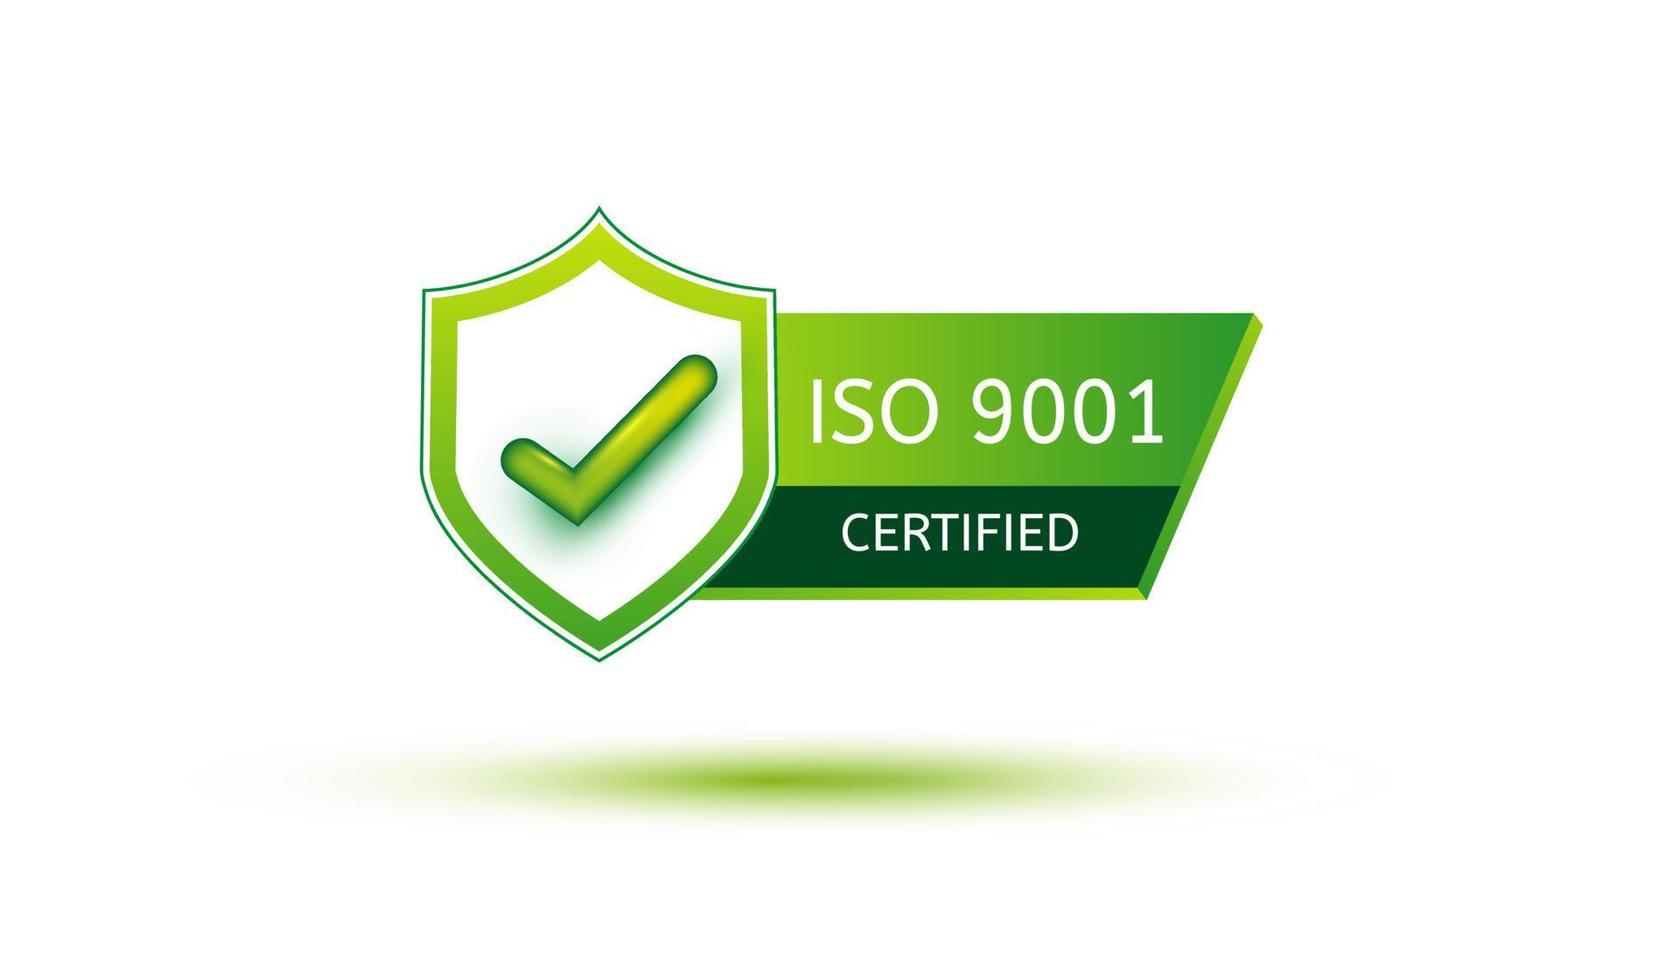 icona del badge certificato iso 9001. sistema internazionale di gestione della qualità dell'industria isolato su sfondo bianco con illustrazione vettoriale ombra verde